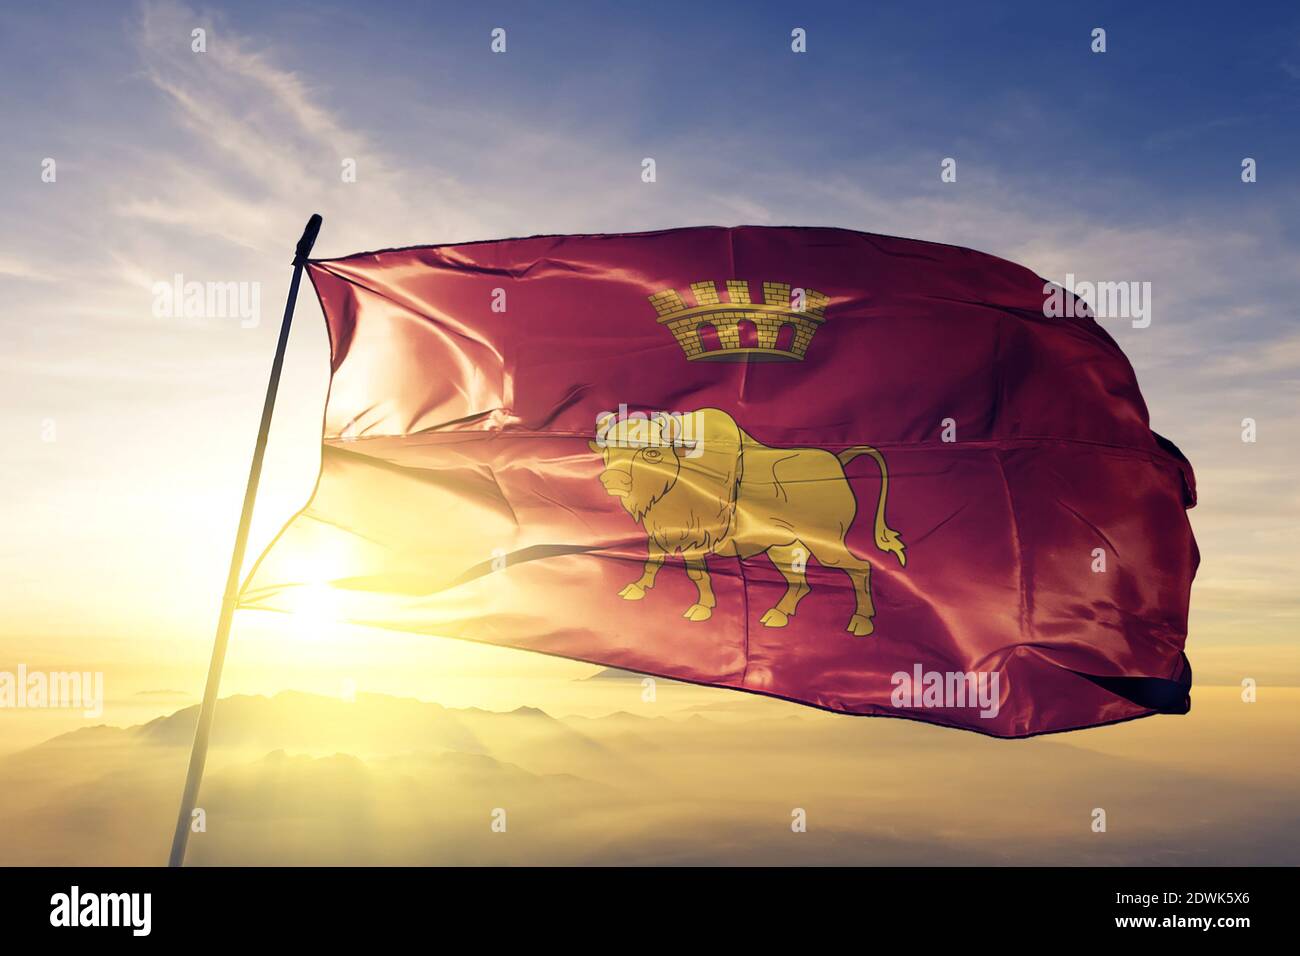 La région de l'oblast de Hrodna, en Biélorussie, est marquée par un drapeau brume de lever de soleil Banque D'Images